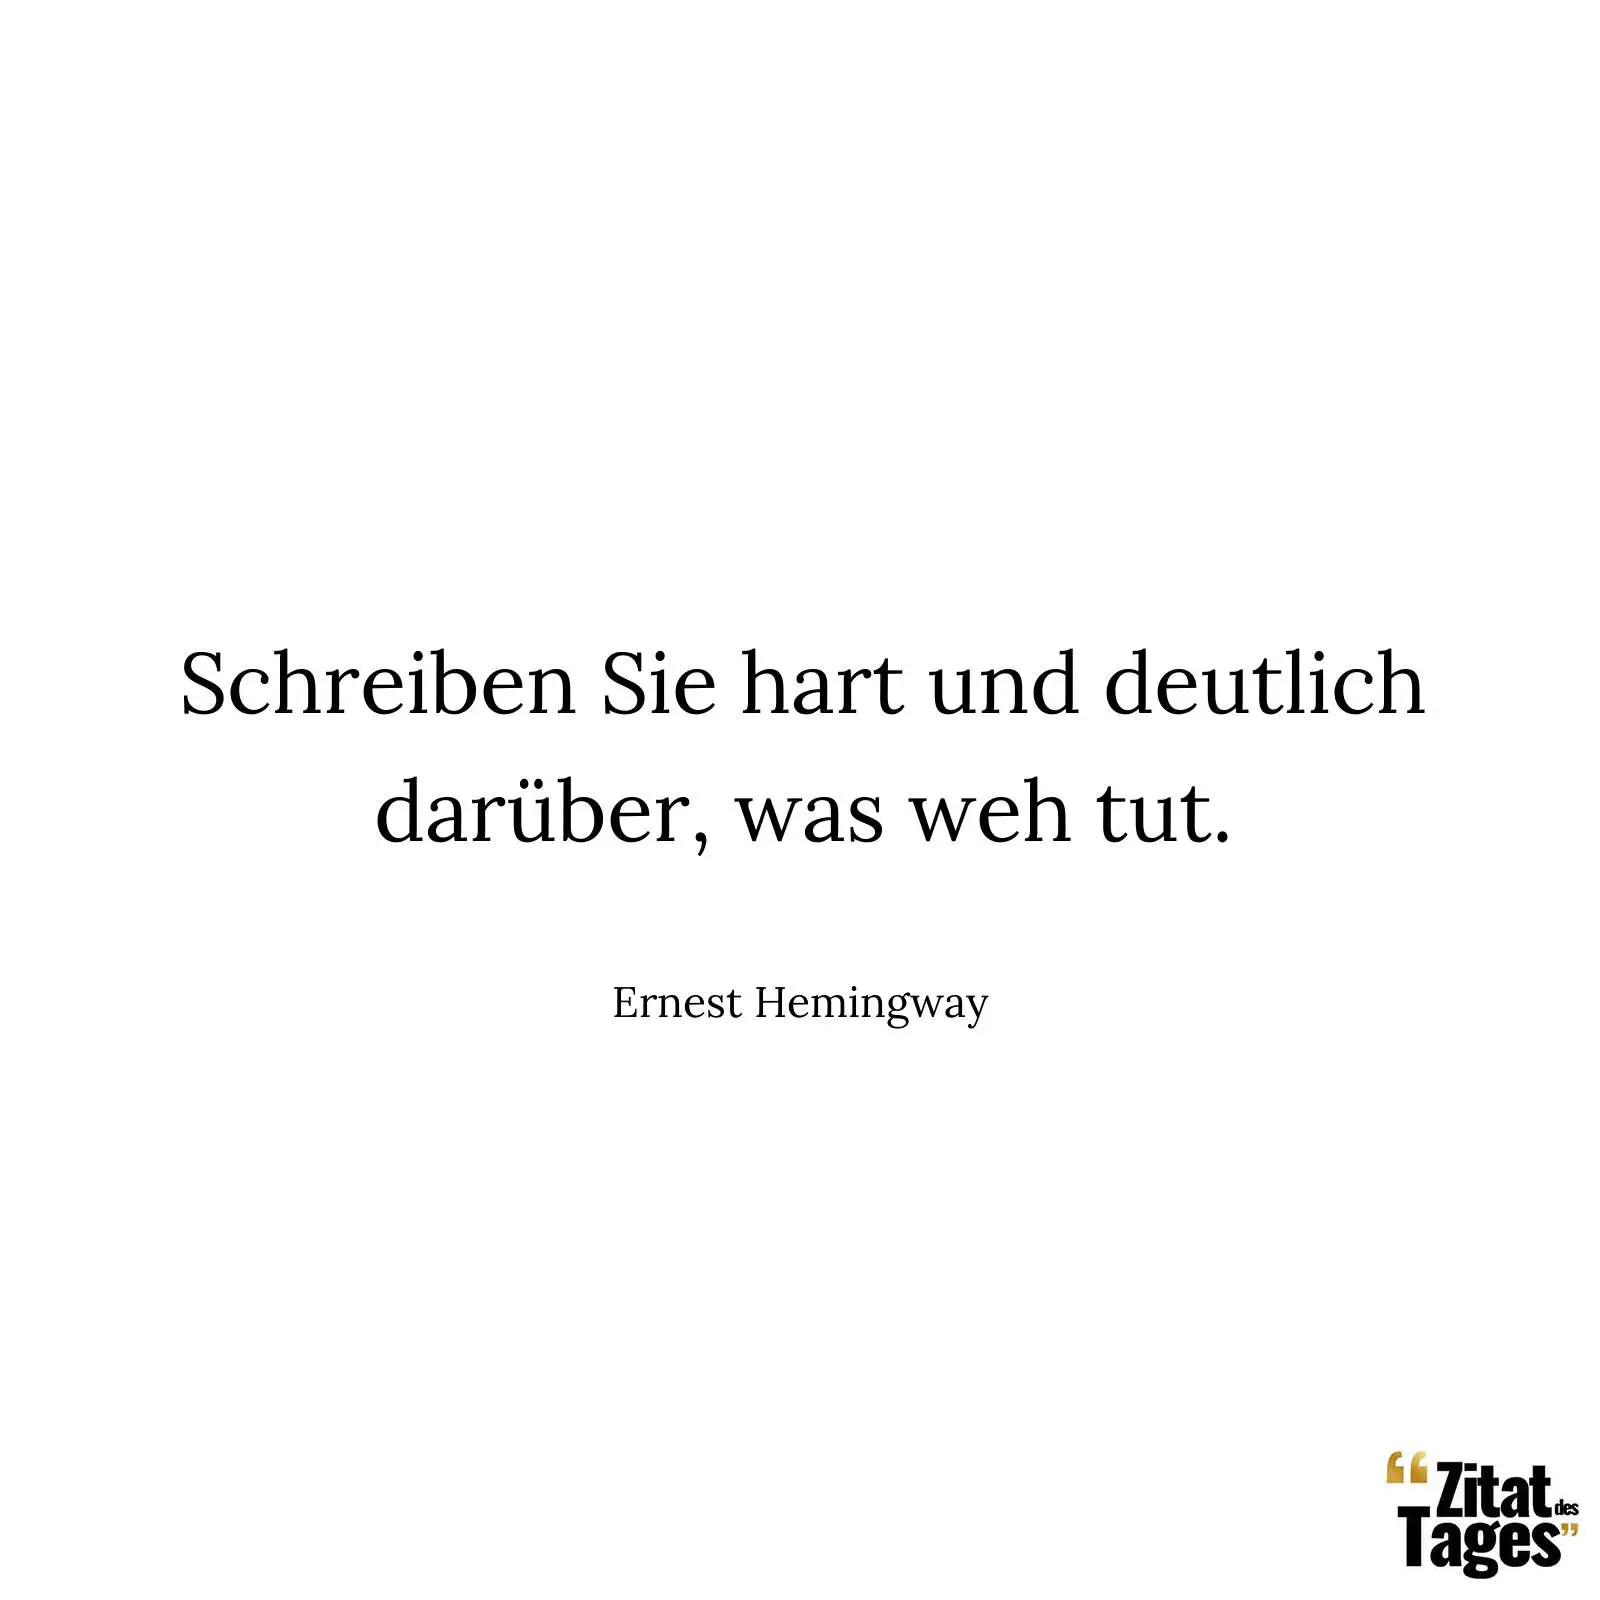 Schreiben Sie hart und deutlich darüber, was weh tut. - Ernest Hemingway